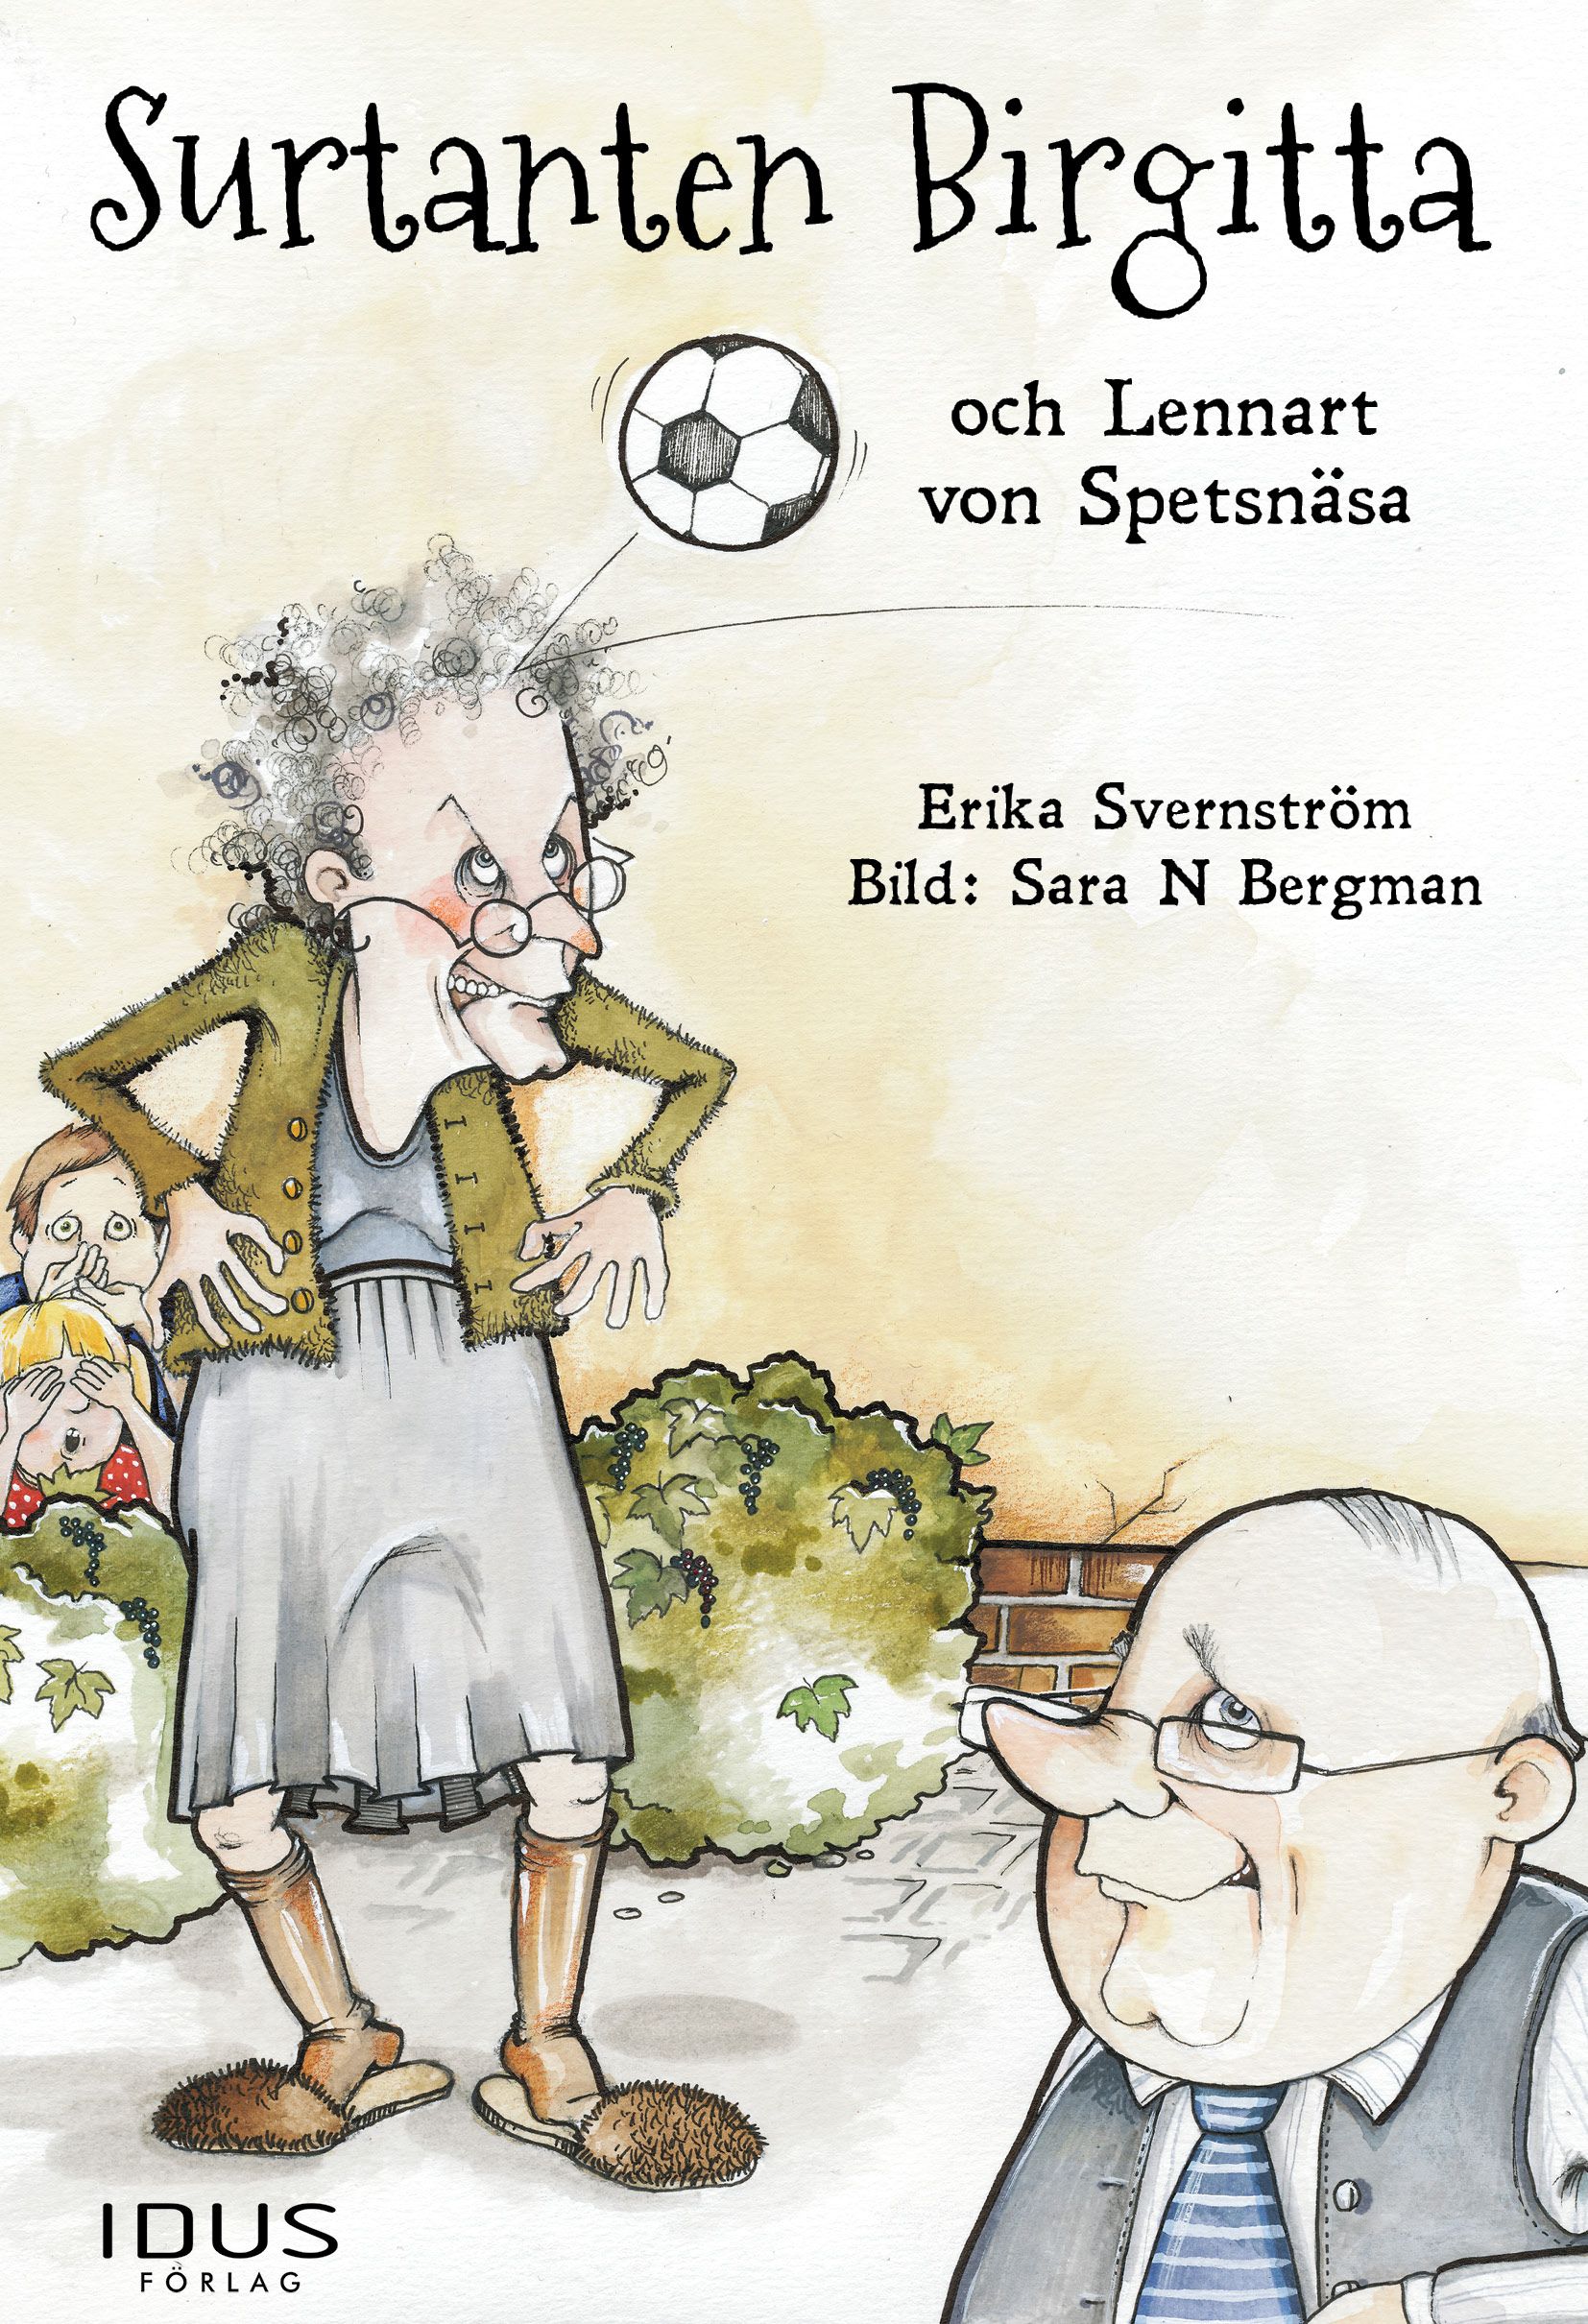 Surtanten Birgitta och Lennart von Spetsnäsa, e-bok av Erika Svernström